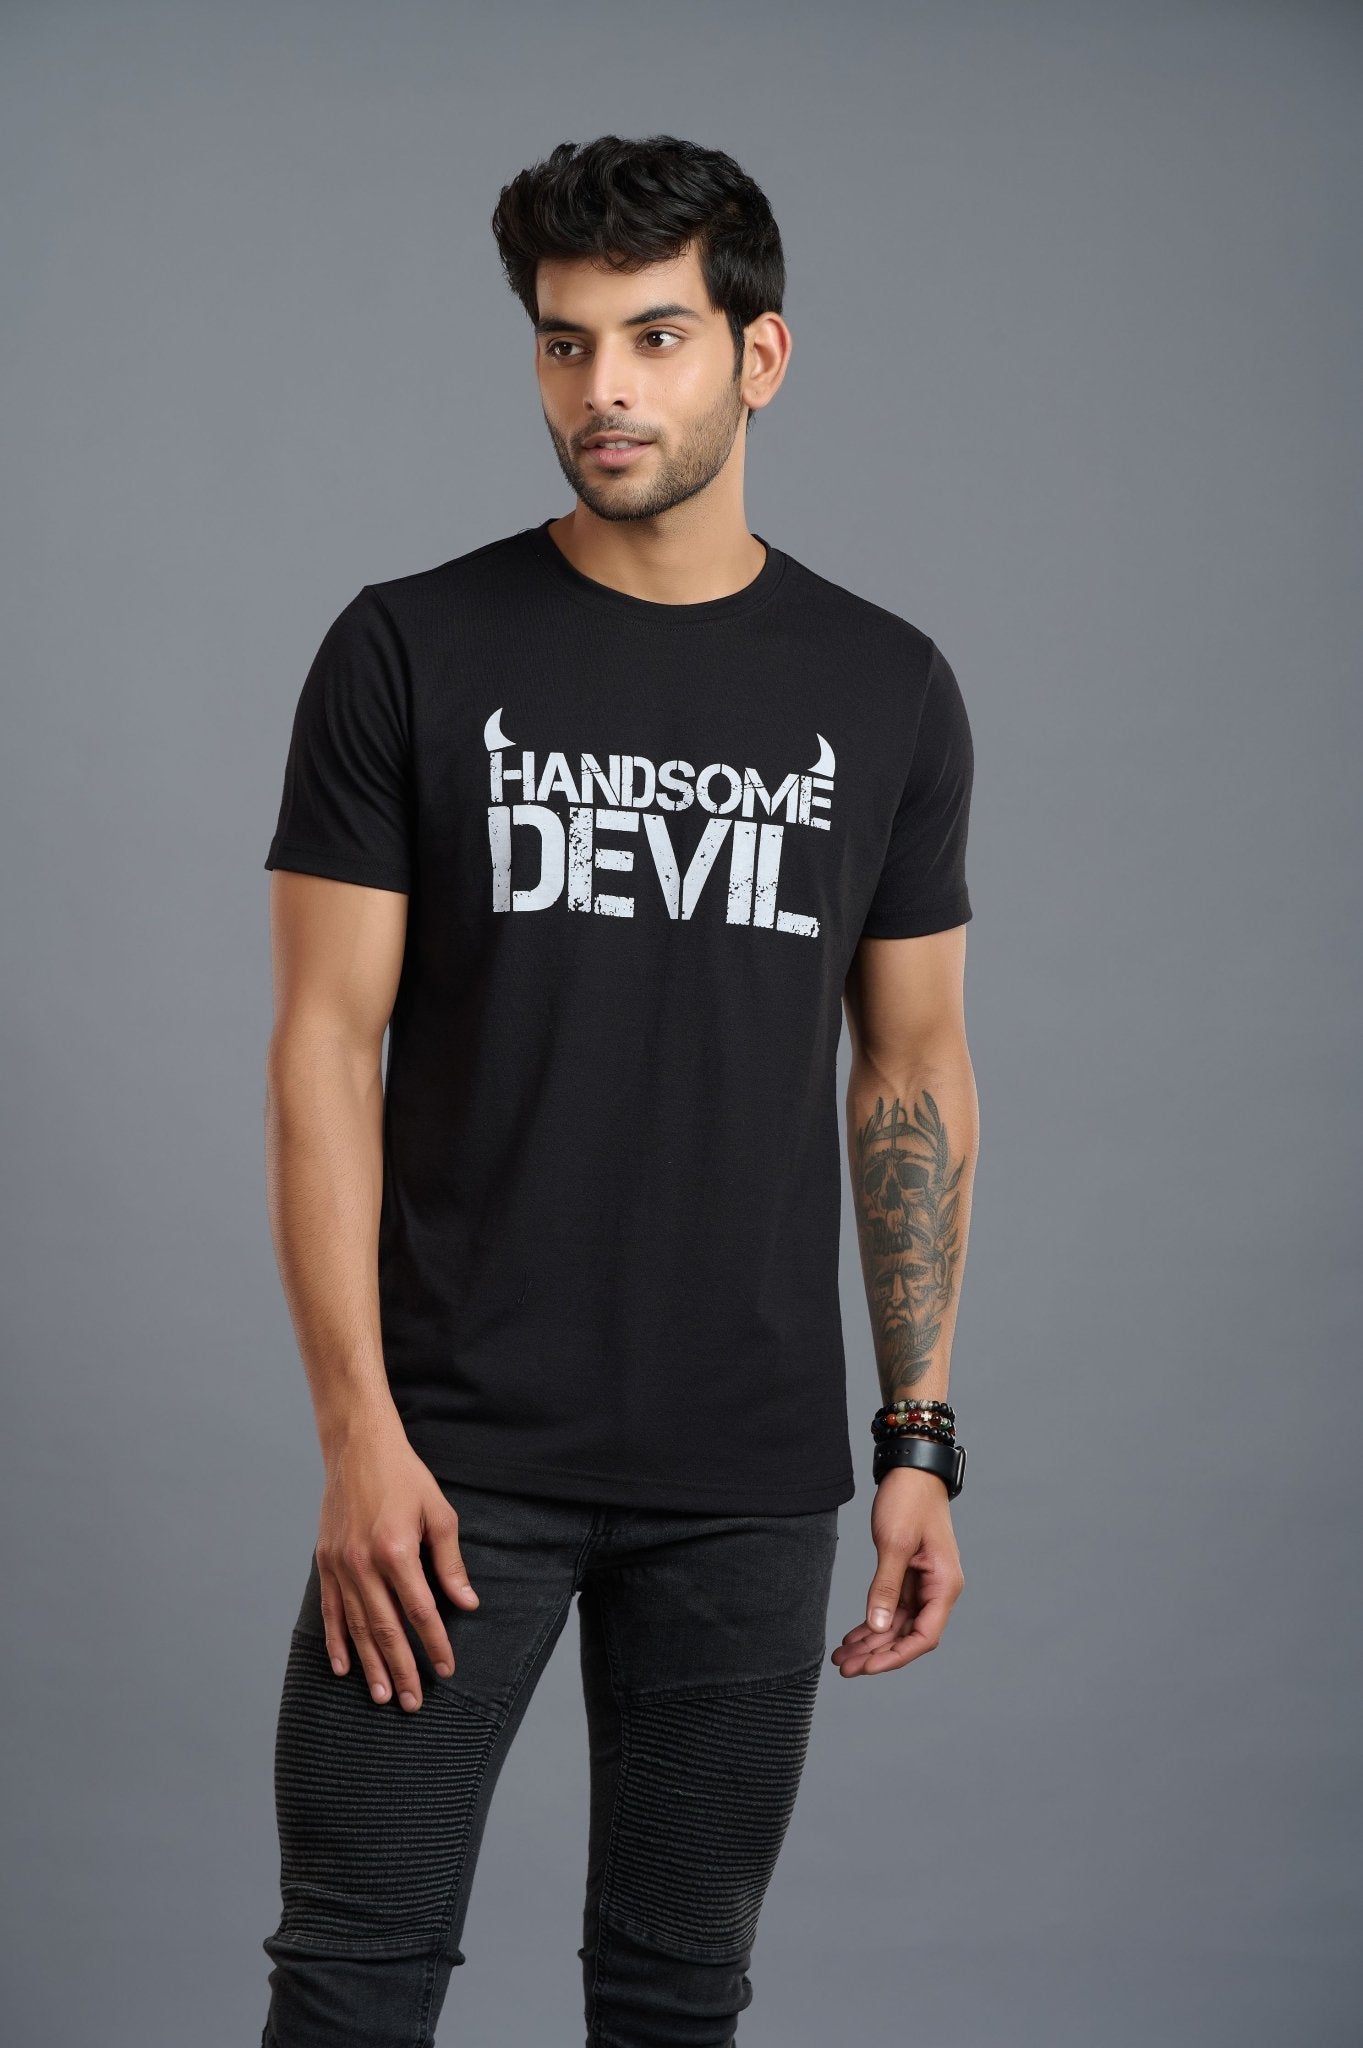 Handsome Devil Printed Black T-Shirt for Men - Go Devil